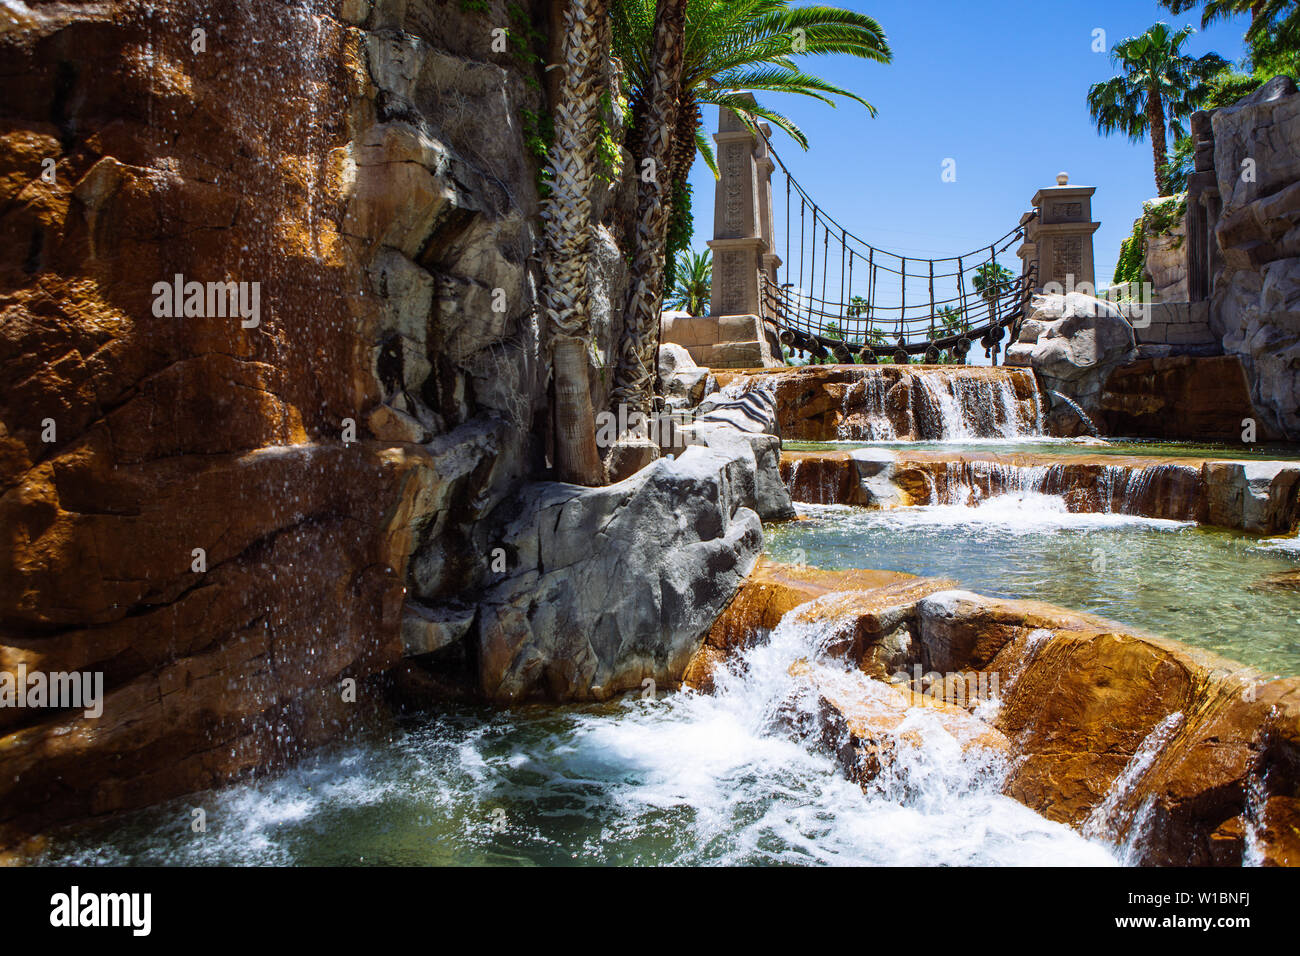 Cascate e ponte oscillante nei motivi del Mandalay Bay Resort & Casino vista attraverso un arco, Las Vegas, Nevada, STATI UNITI D'AMERICA Foto Stock